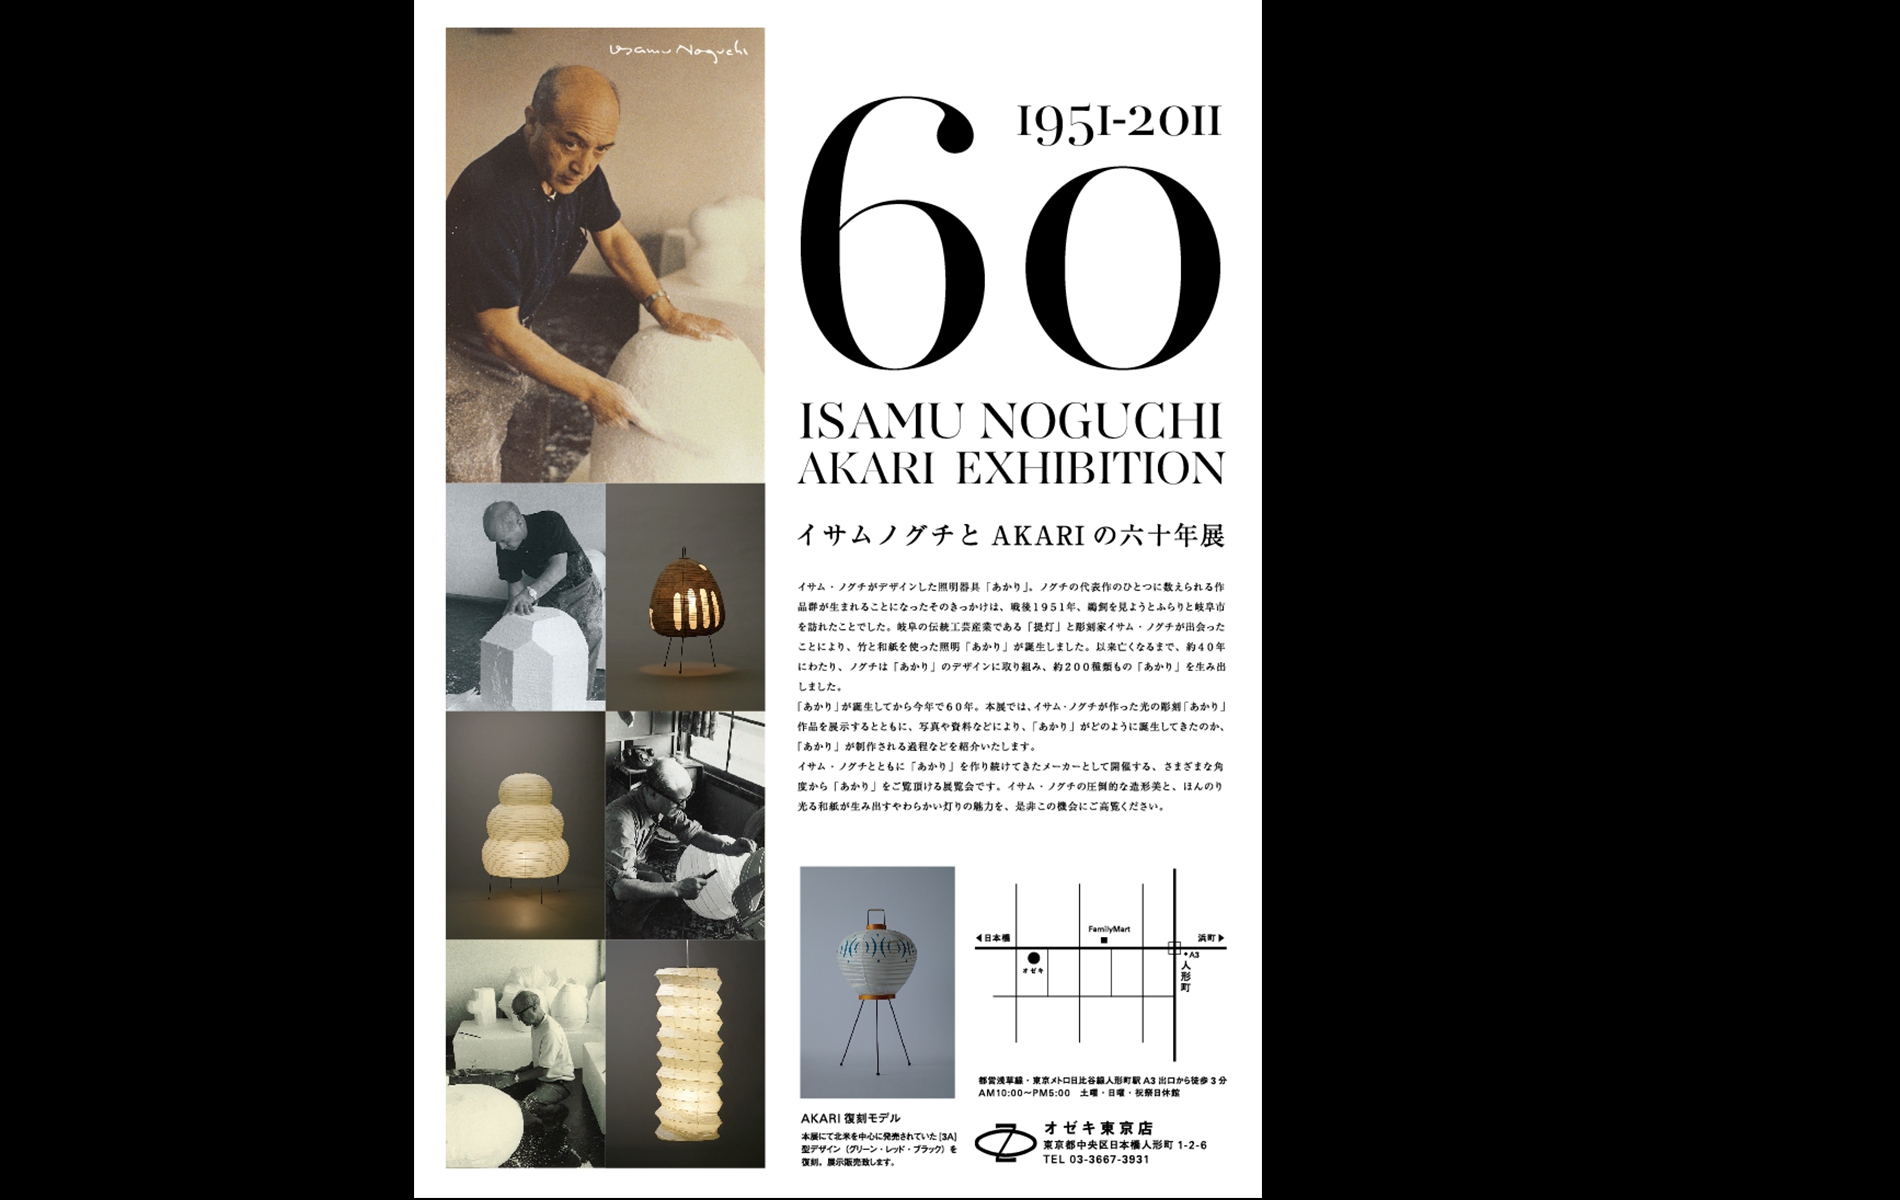 ISAMU NOGUCHI EXHIBITION